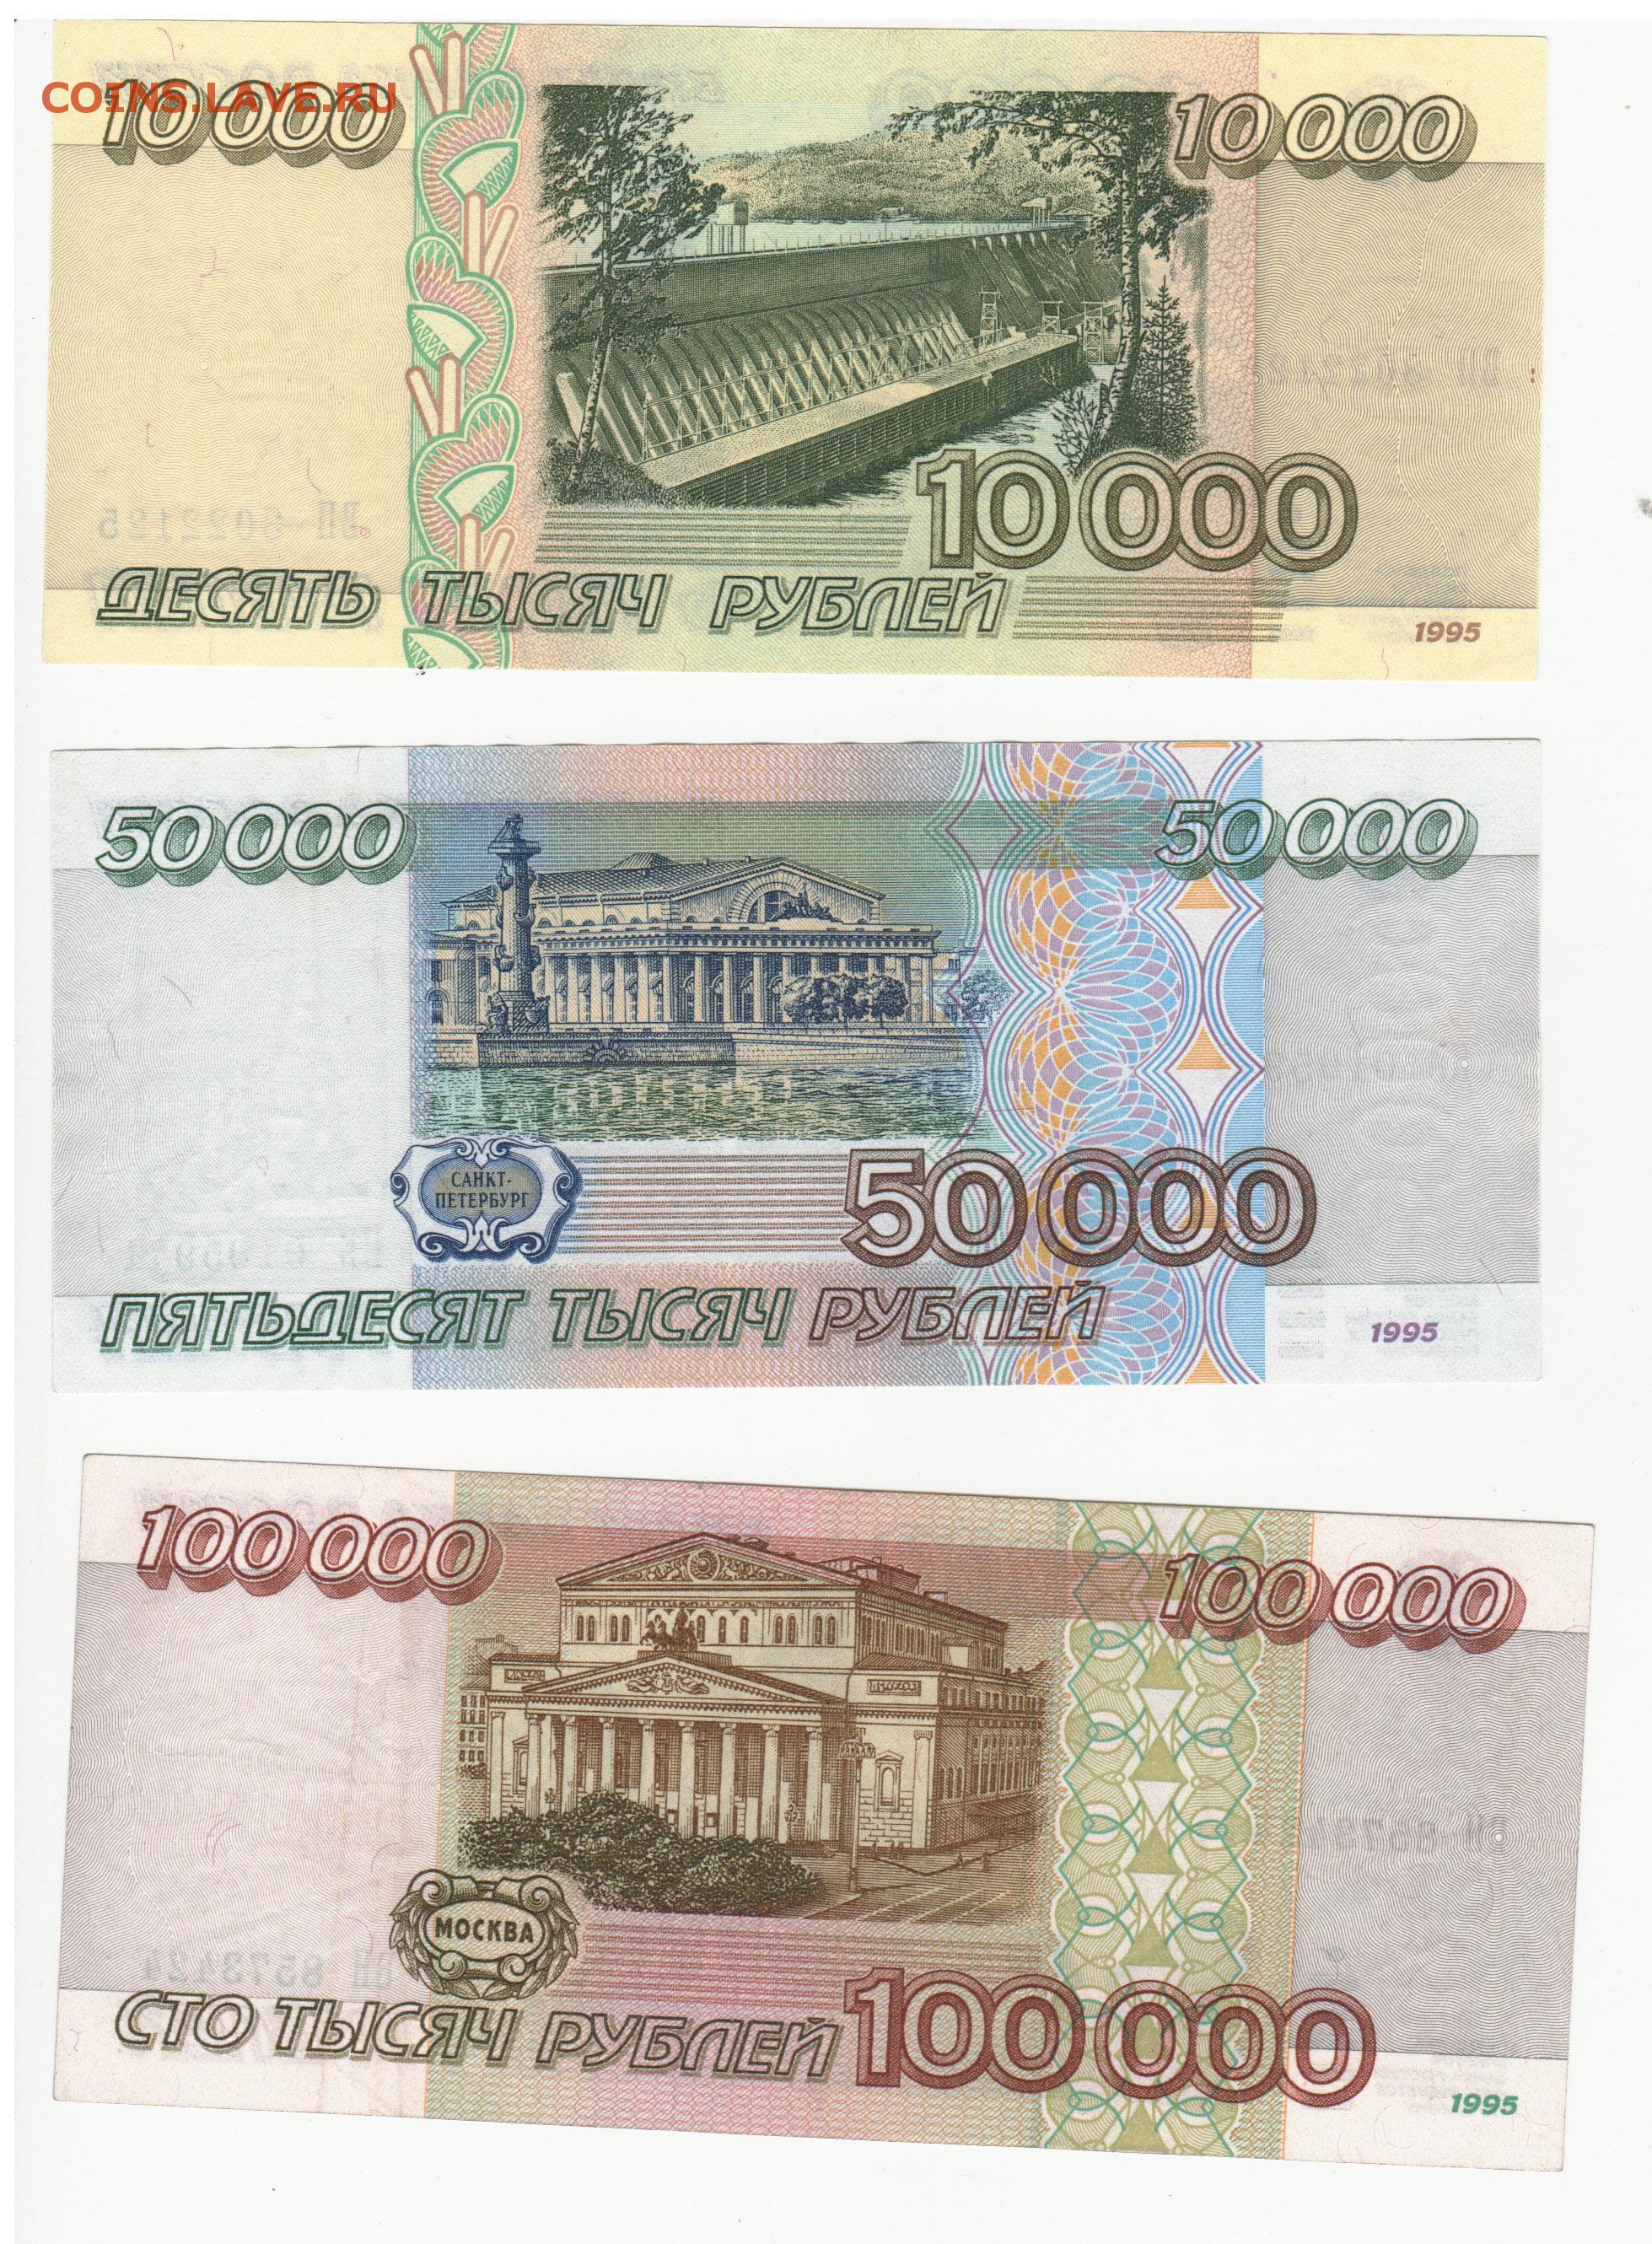 100.000 3. 100000 Рублей 1995 года. Банкнота 100000 рублей 1995. 50 000 Рублей купюра 1995 года. СТО тысяч рублей купюра.